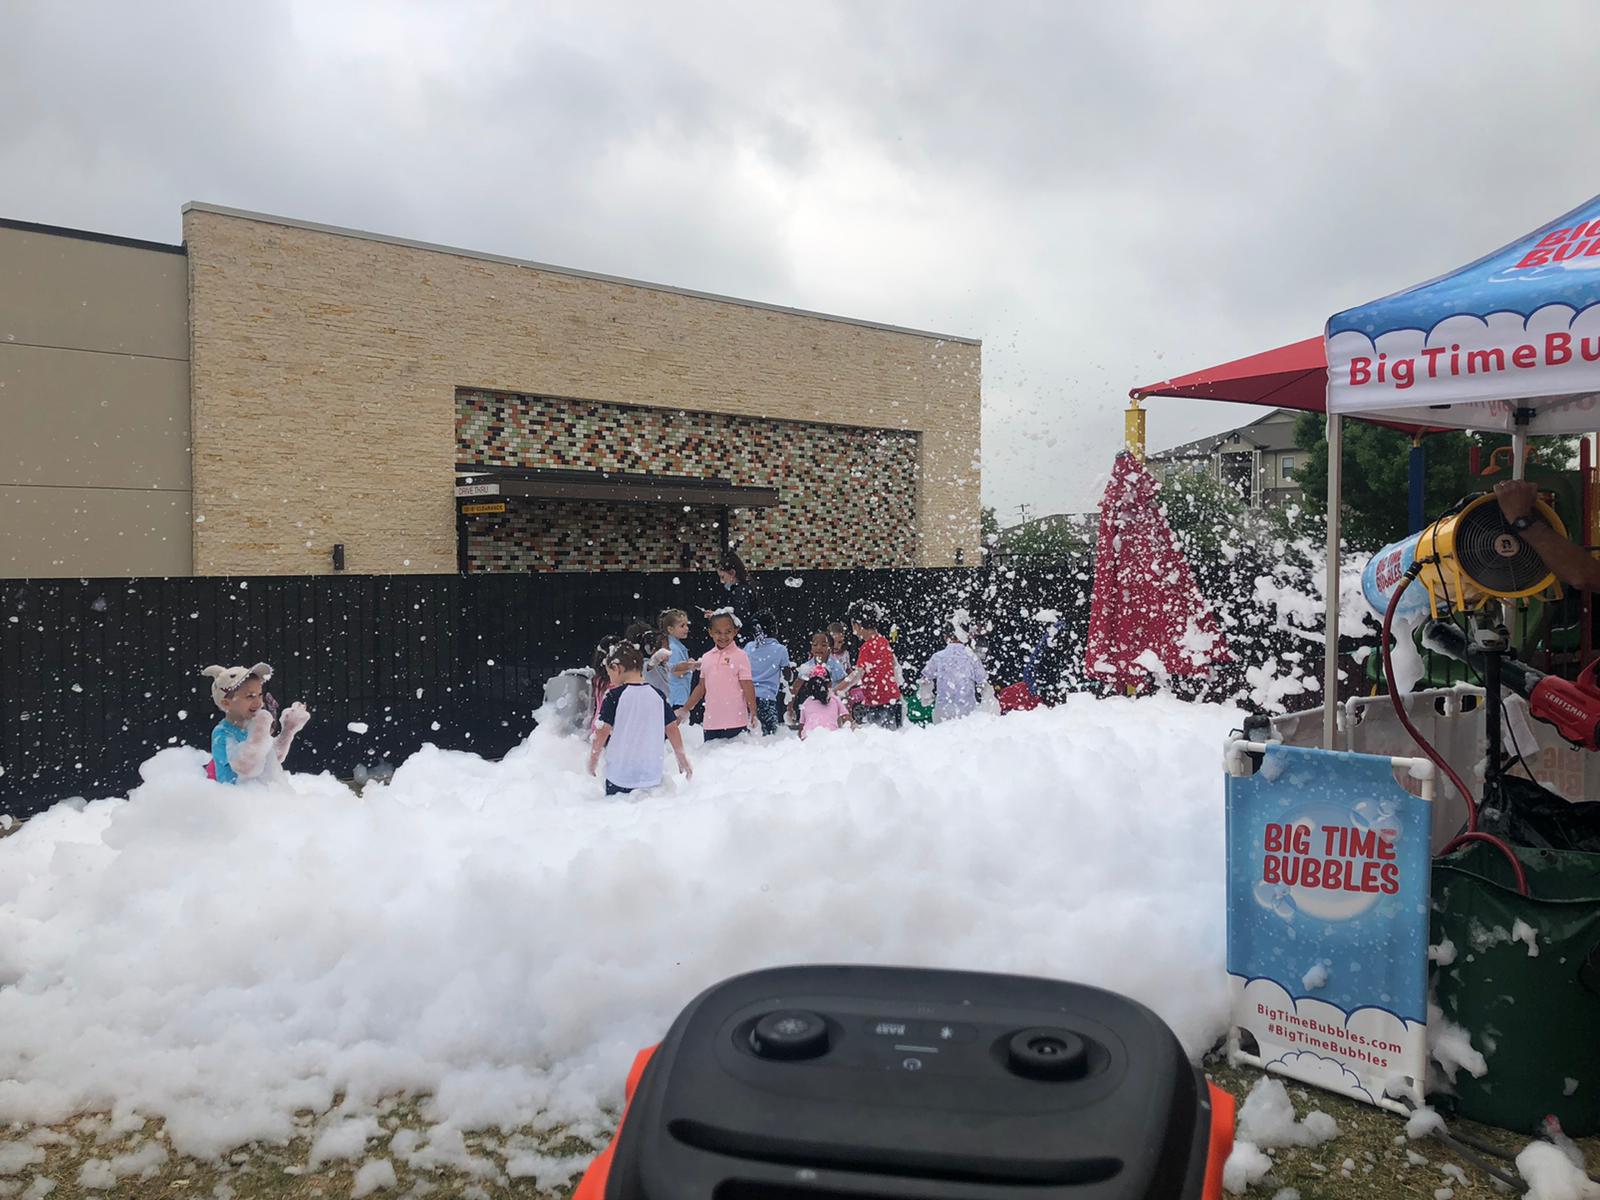 Preschool Foam Party